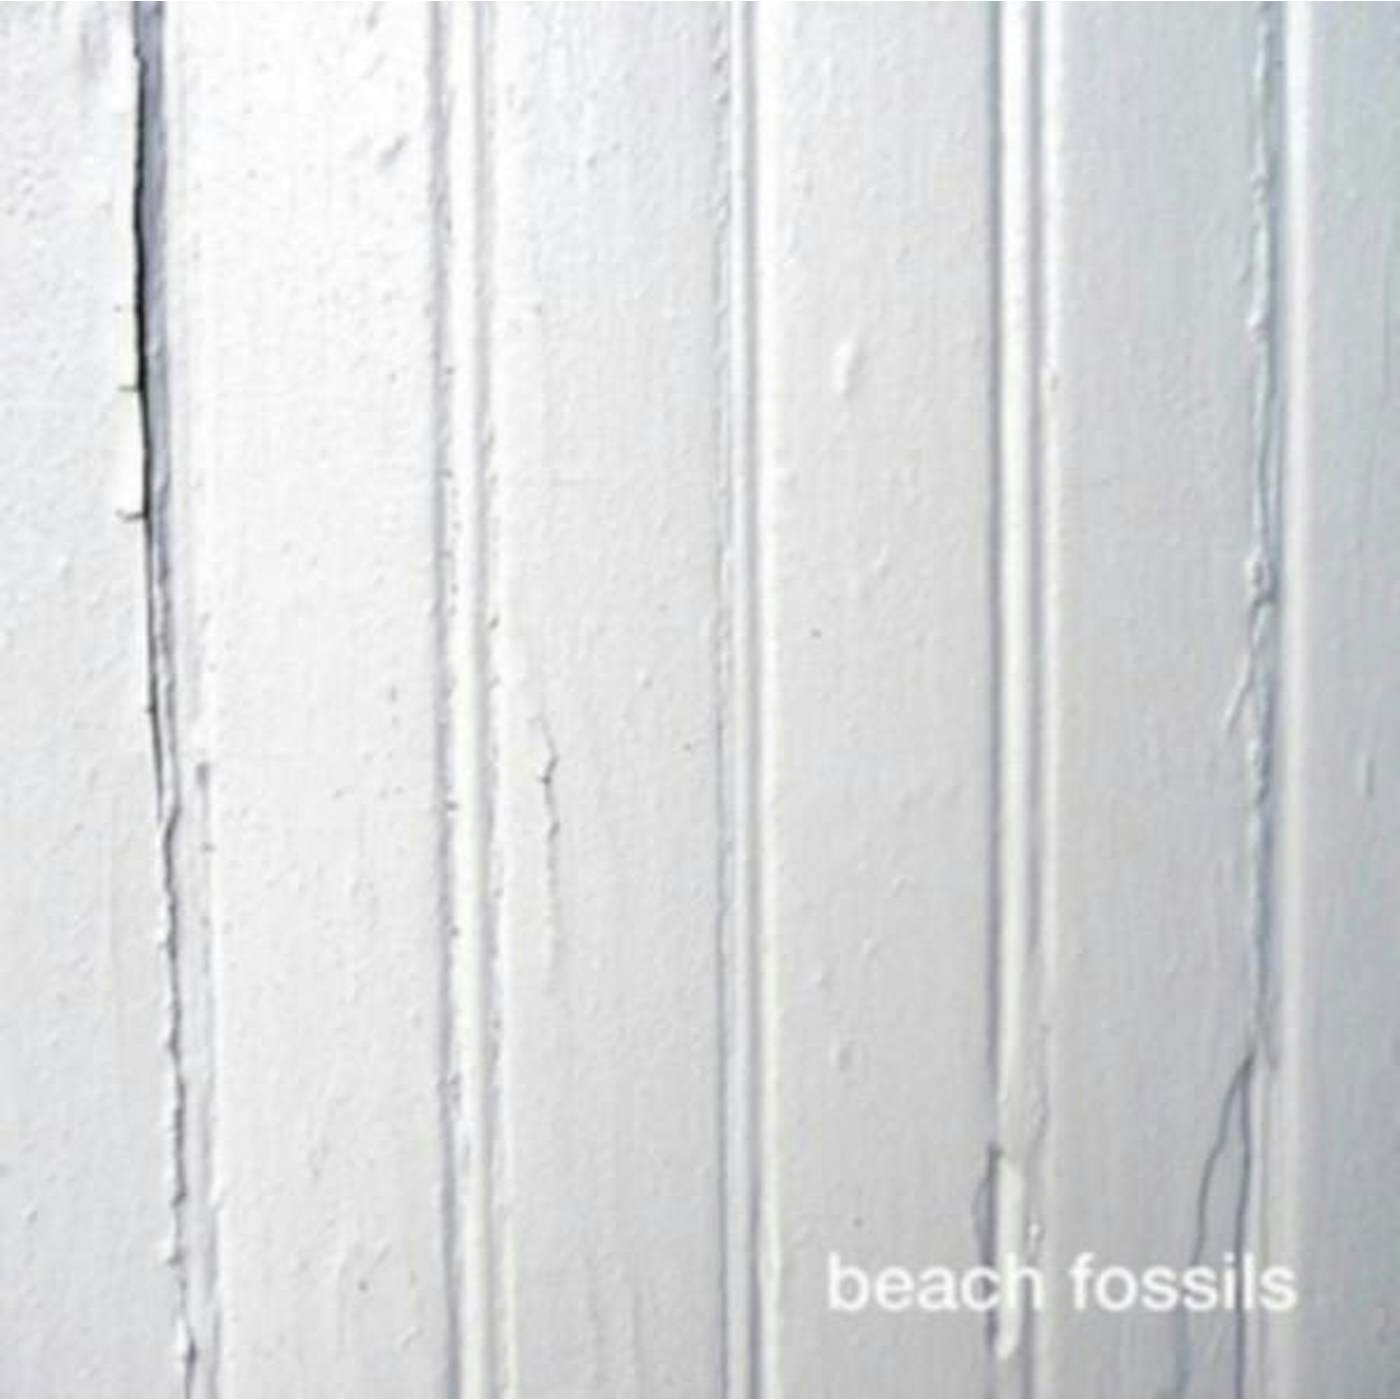 BEACH FOSSILS CD